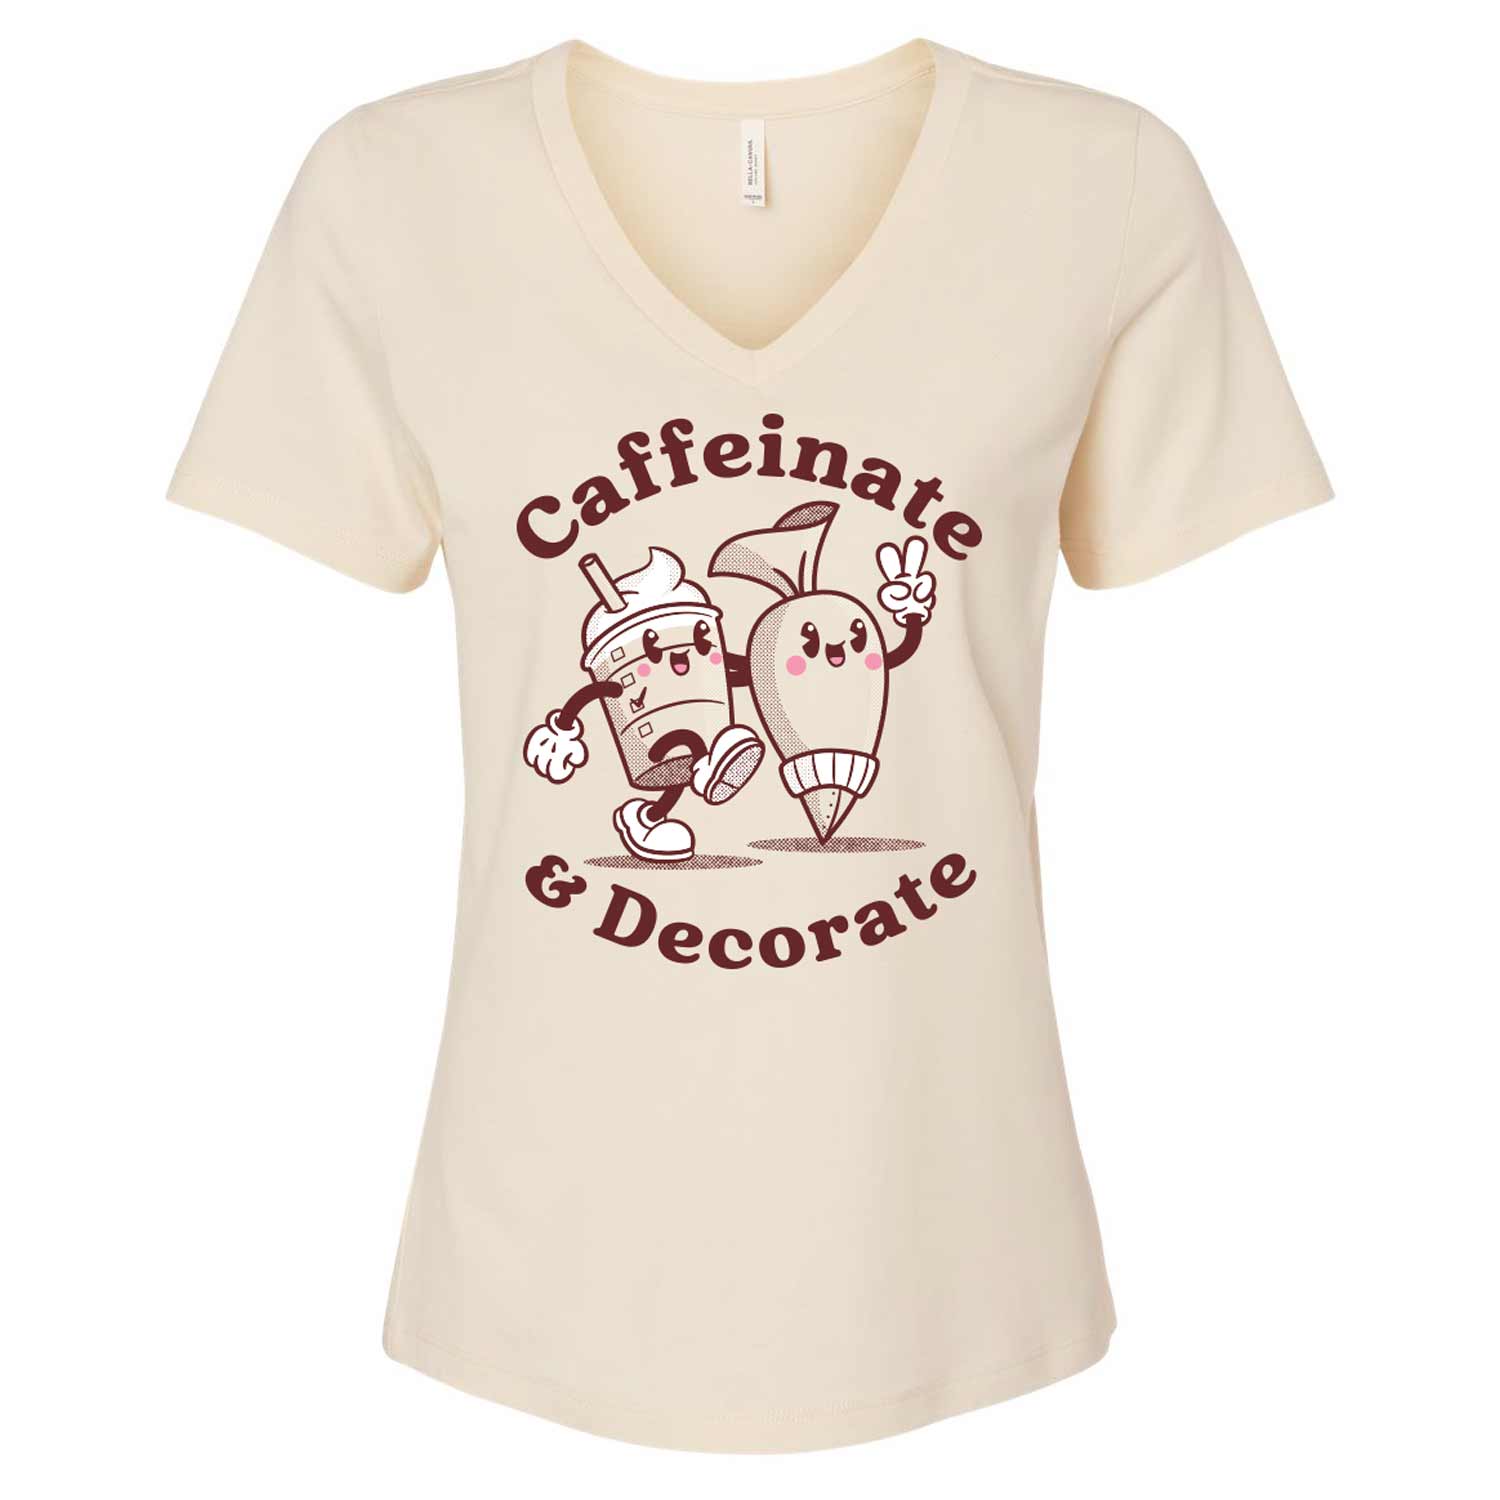 Caffeinate & Decorate Ladies V-Neck T-Shirt